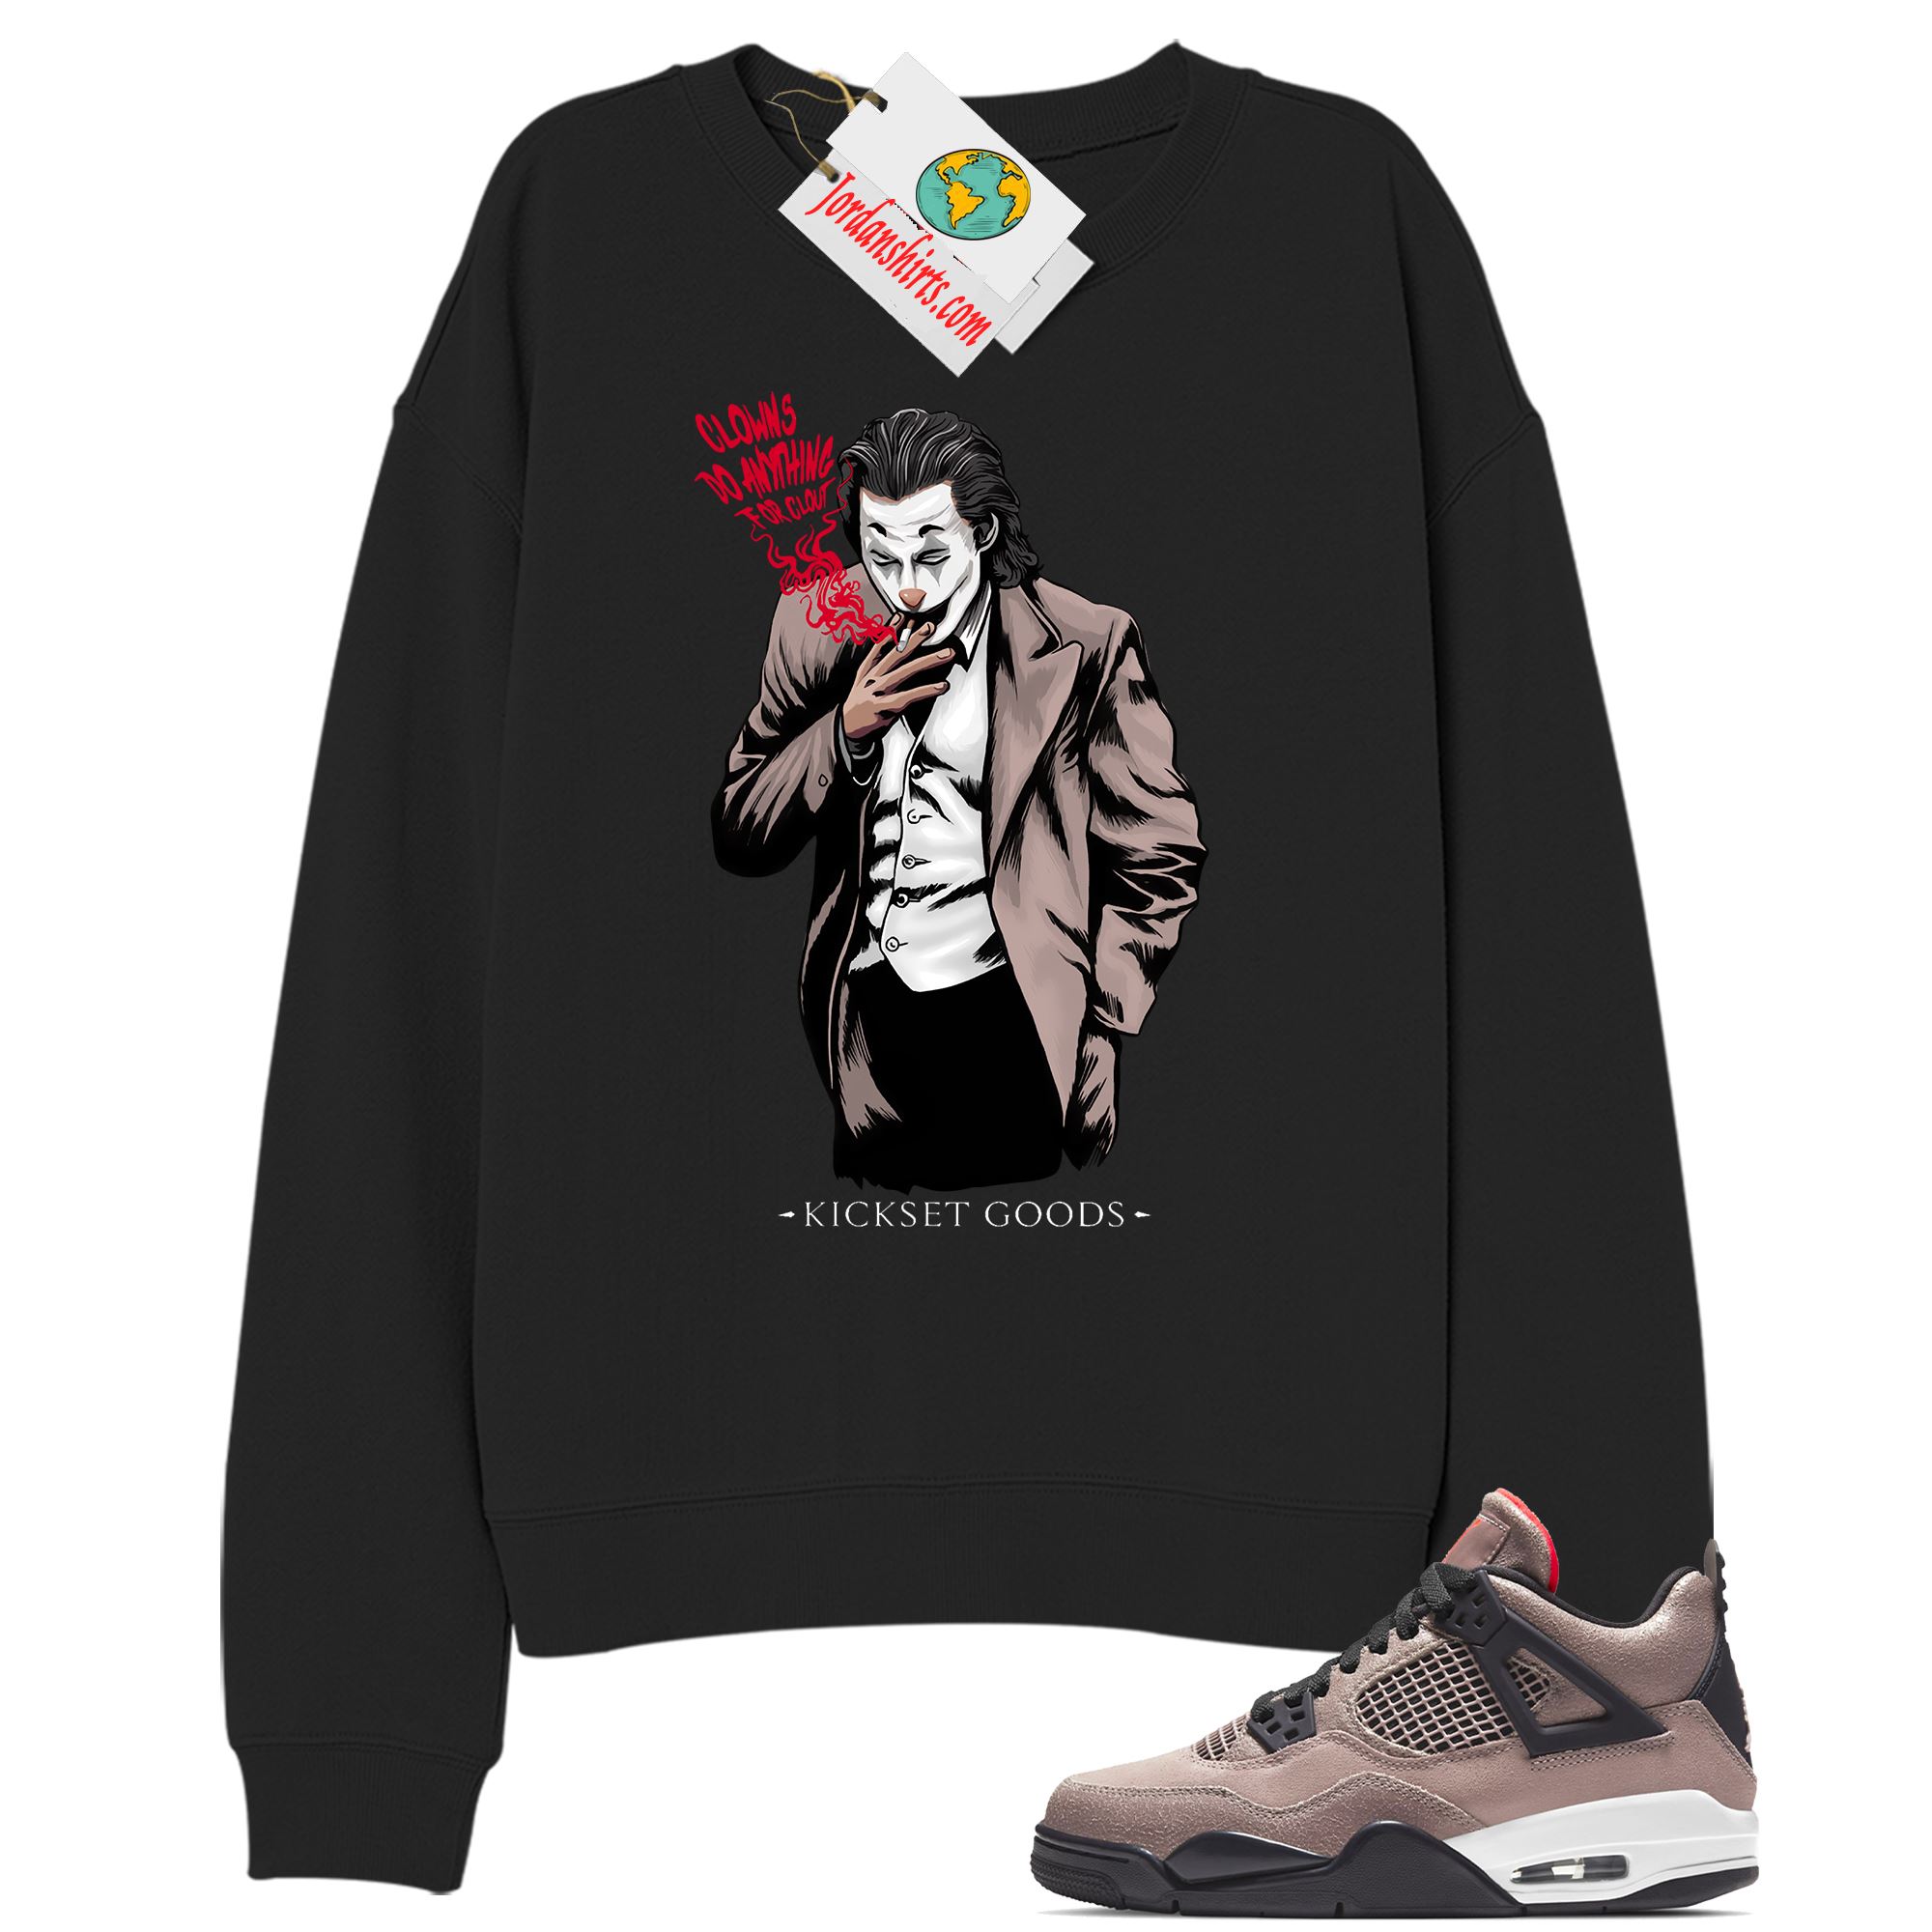 Jordan 4 Sweatshirt, Joker Black Sweatshirt Air Jordan 4 Taupe Haze 4s Full Size Up To 5xl